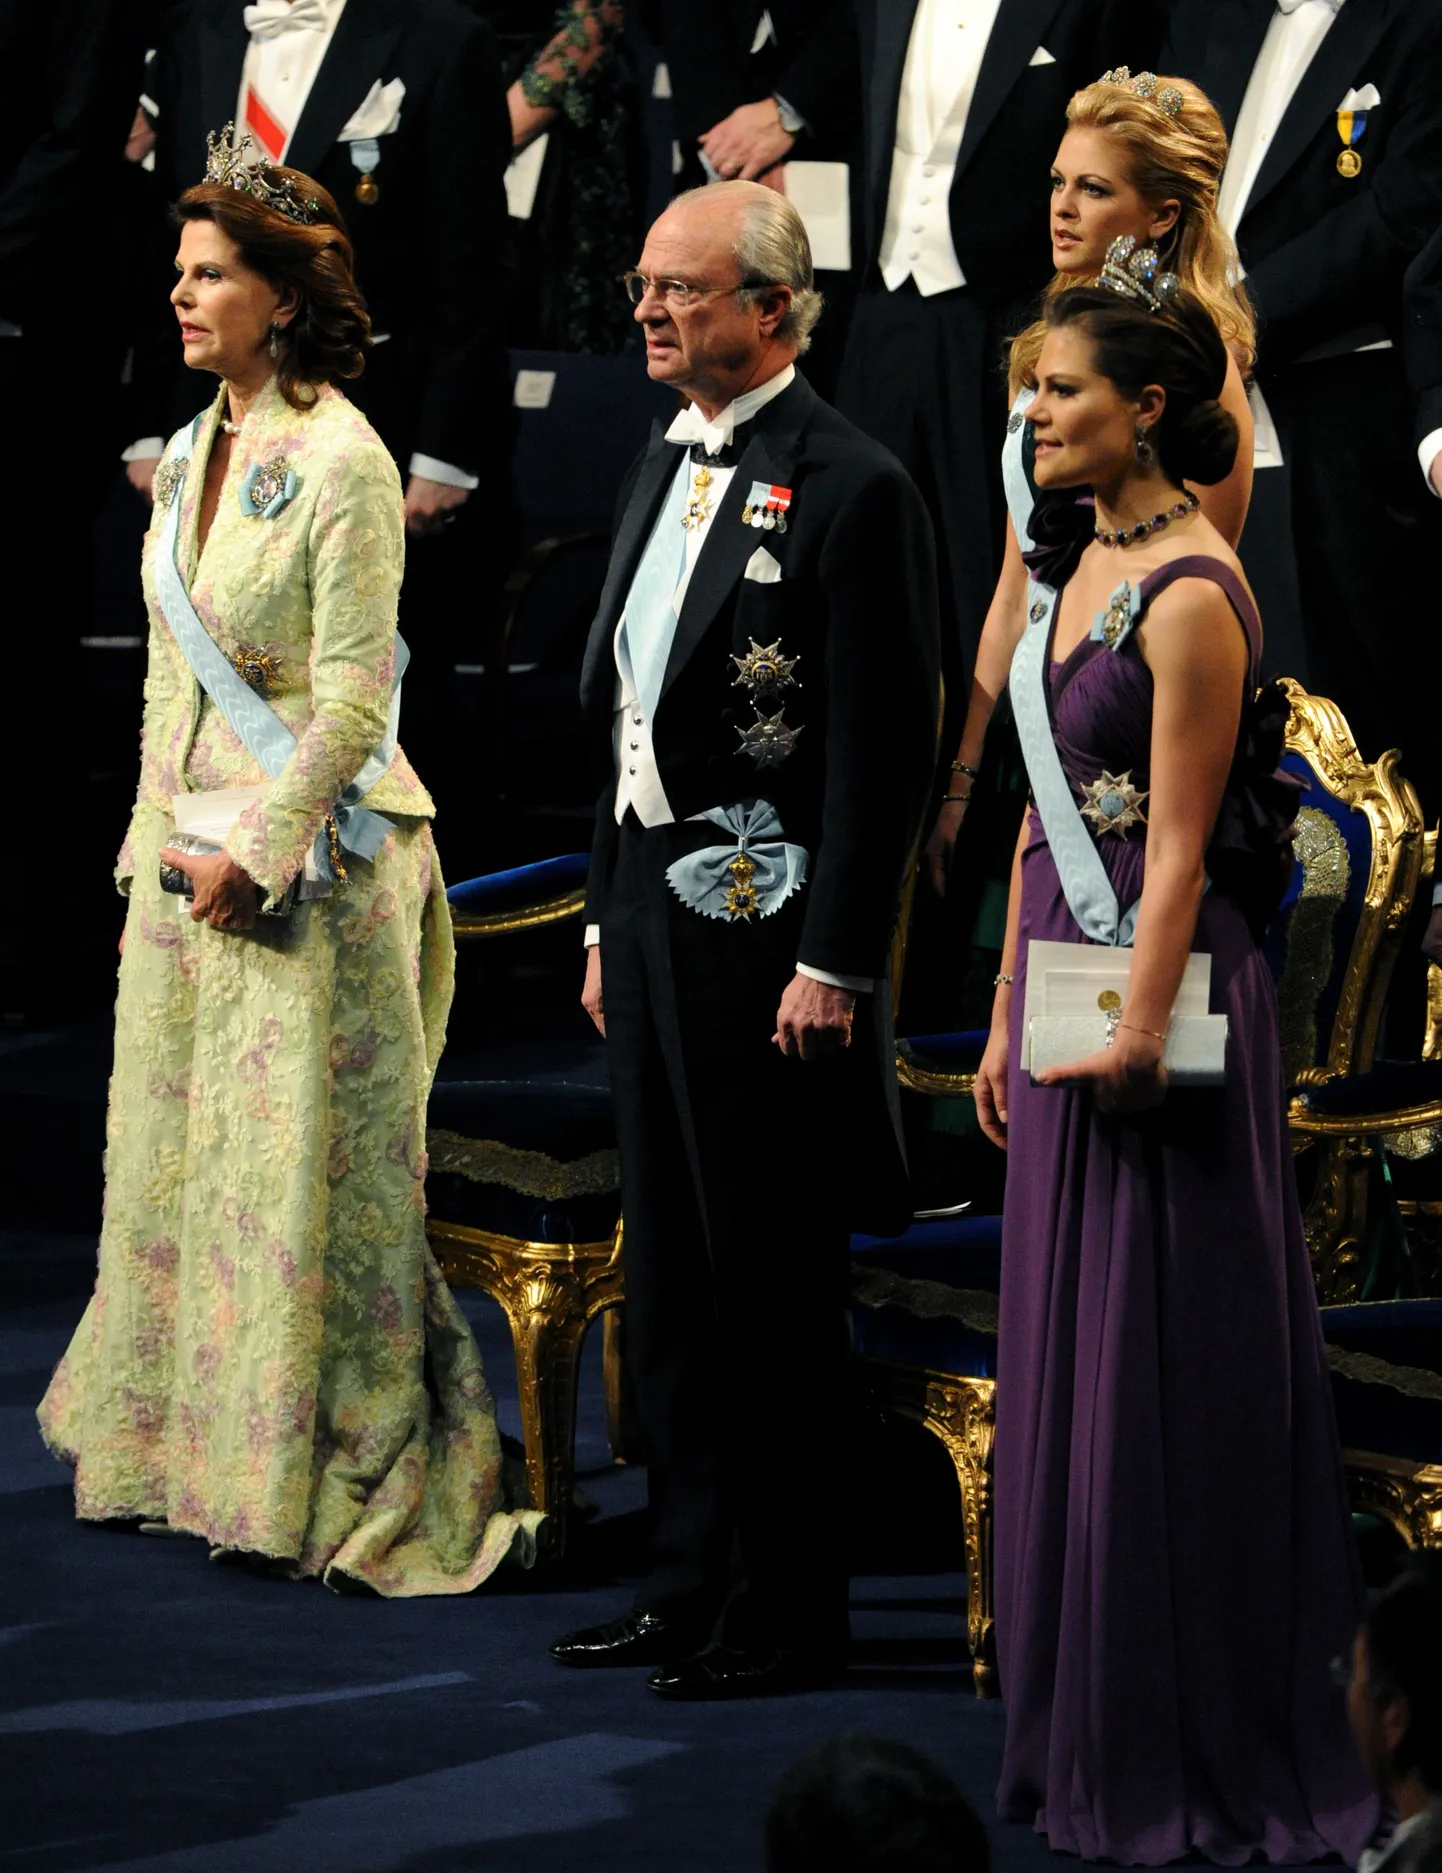 Rootsi kuninglik perekond - kuninganna Silvia, kuningas Carl XVI Gustav, kroonprintsess Victoria ja printsess Madeleine. Fotolt puudub prints Carl Philip